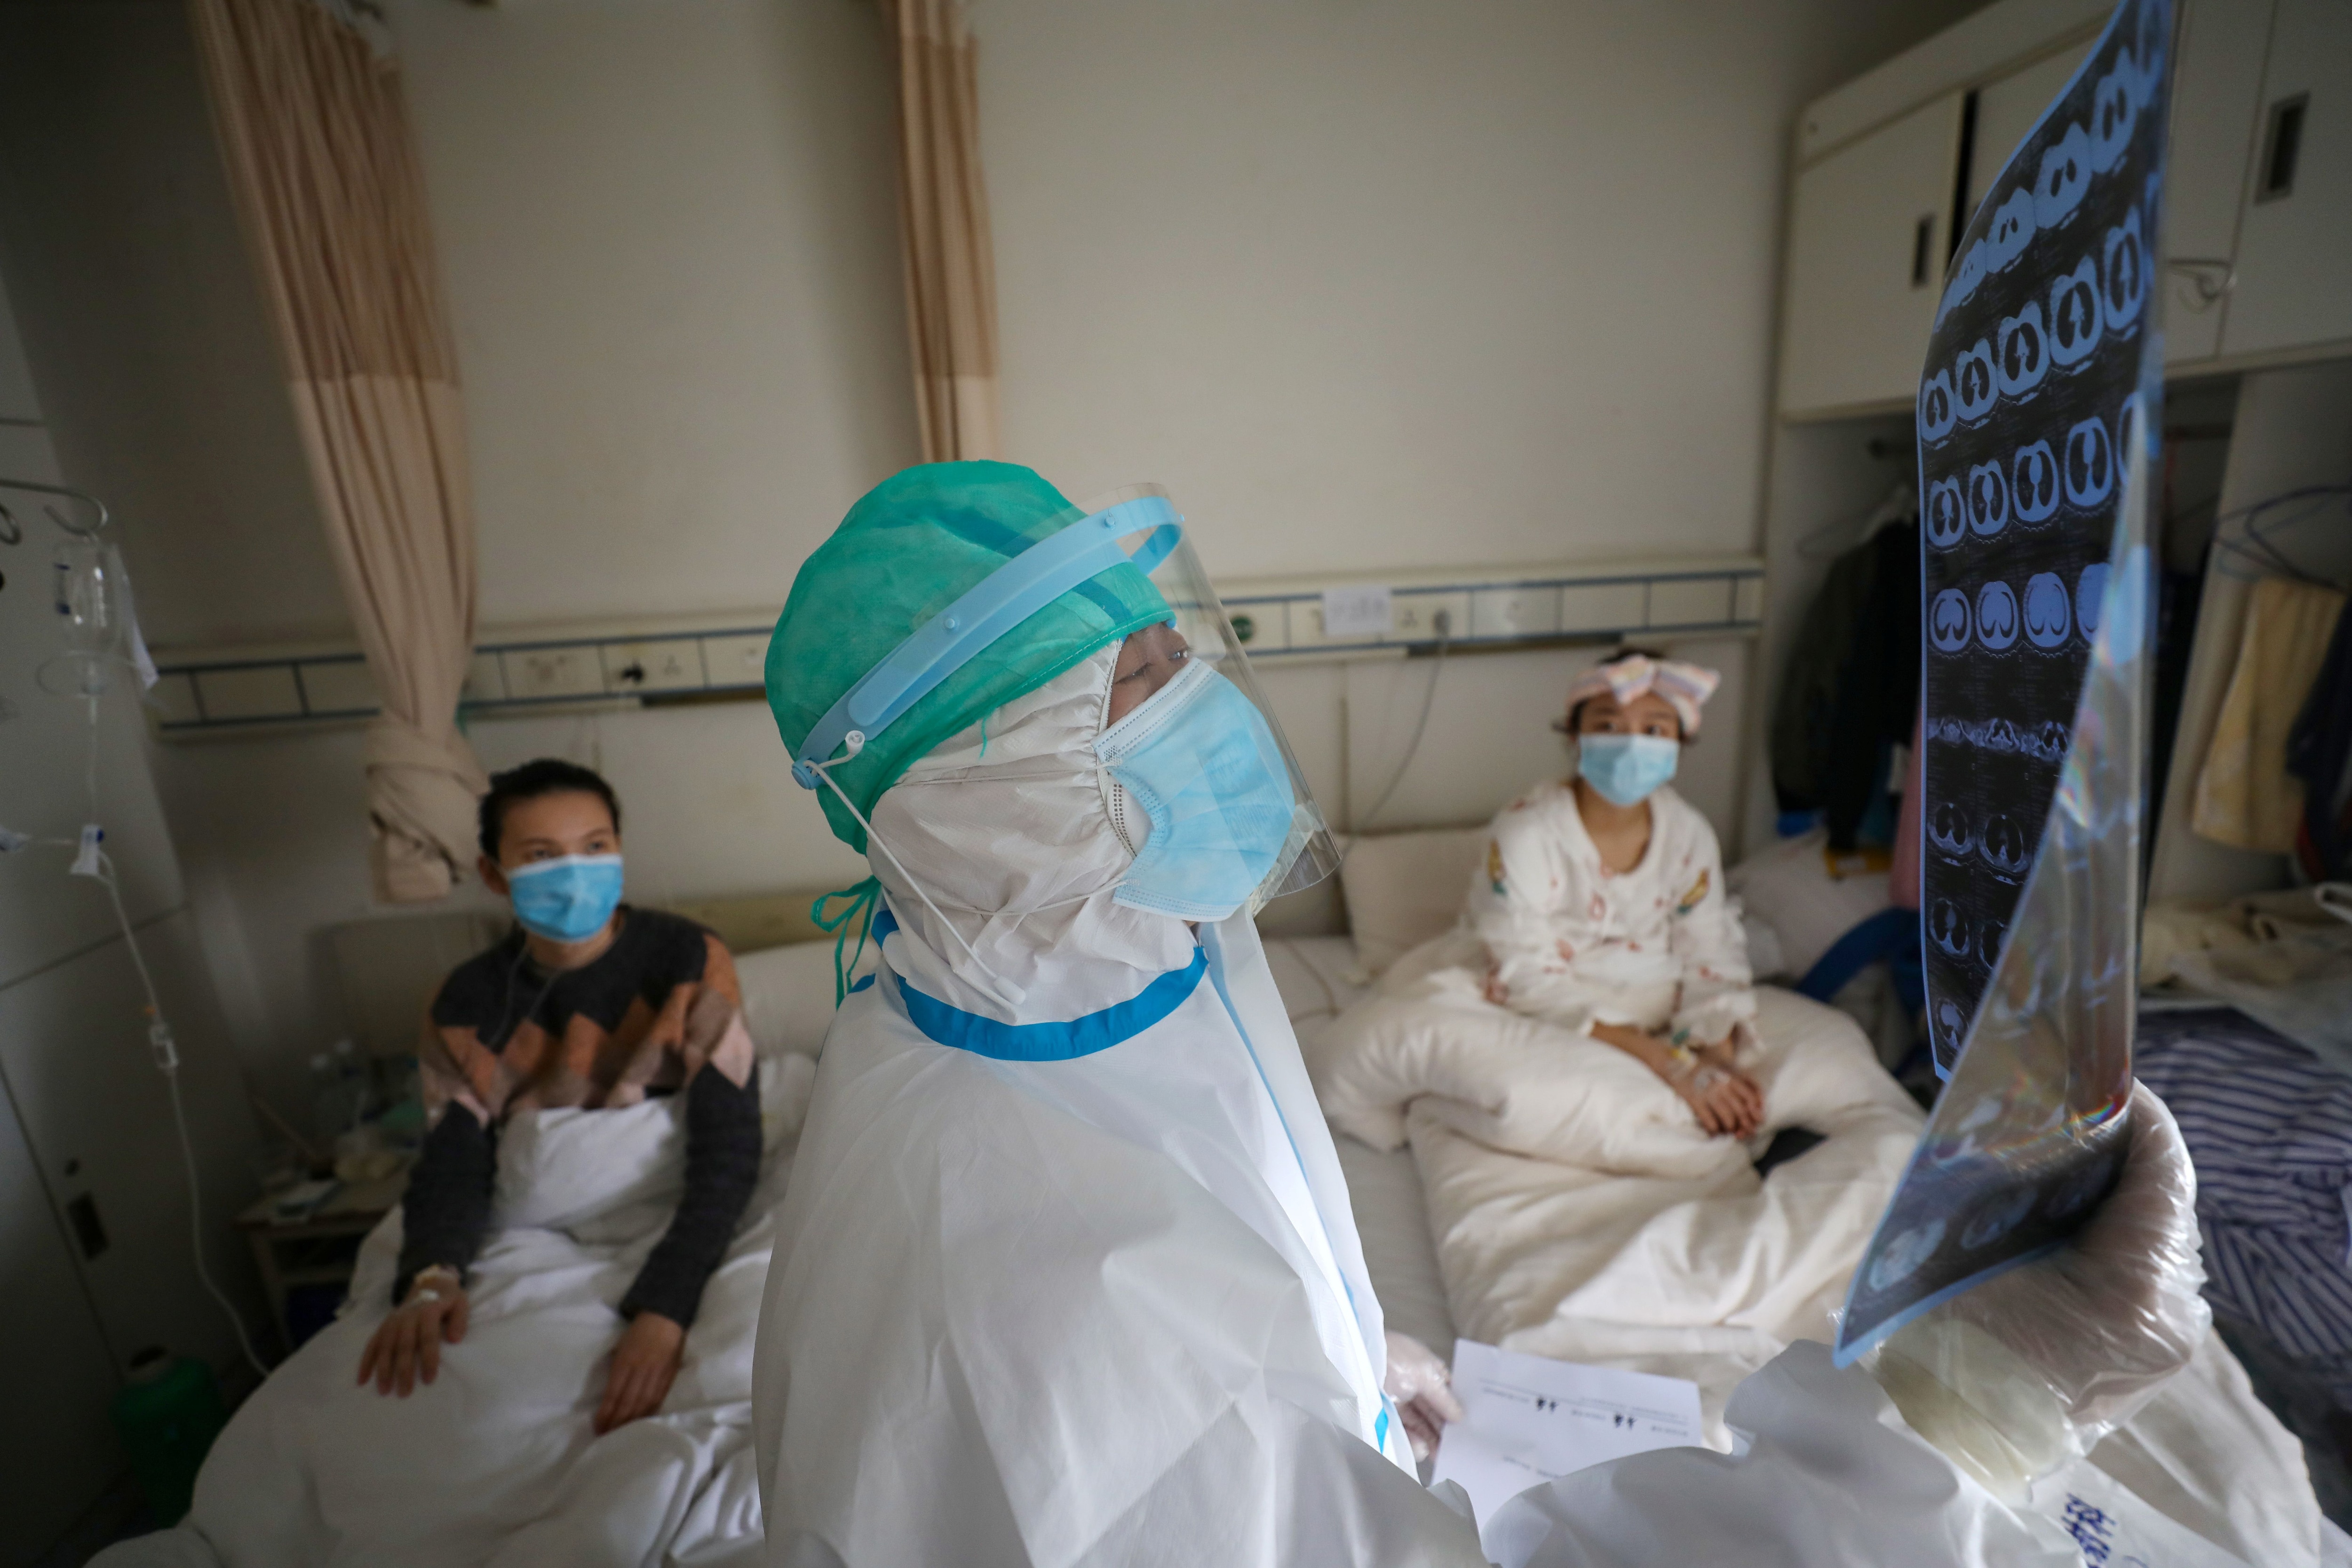 “A las 11 de esa noche la fiebre no se me había pasado, así que fui al hospital”, contó sobre su cuarto día con síntomas (China Daily vía Reuters)